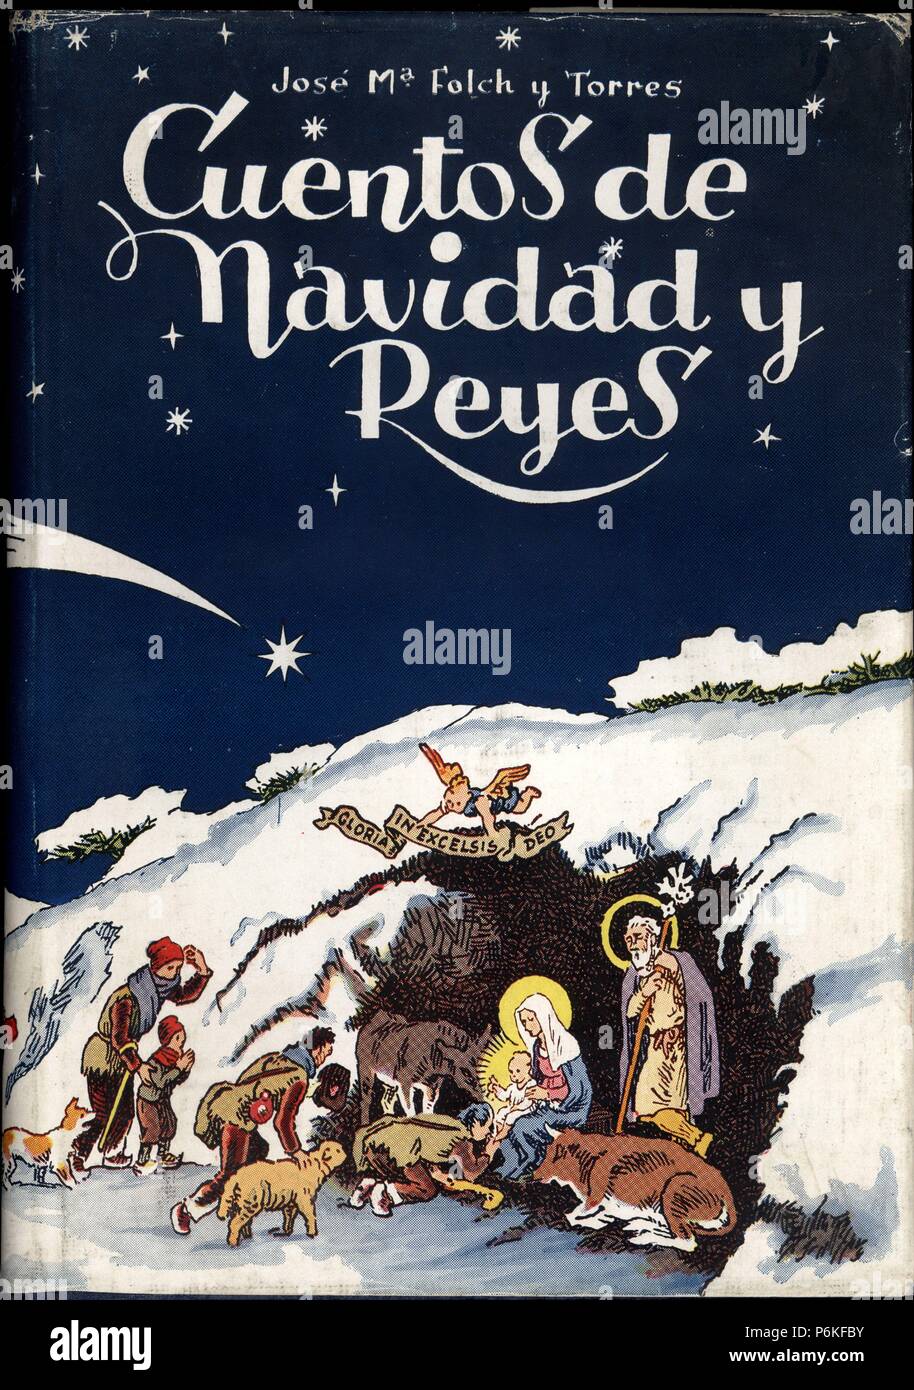 Portada del libro Cuentos de Navidad y Reyes, de Josep Maria Folch i  Torres. Dibujo de Joan Junceda (1881-1948). Editado en Barcelona, 1945  Fotografía de stock - Alamy